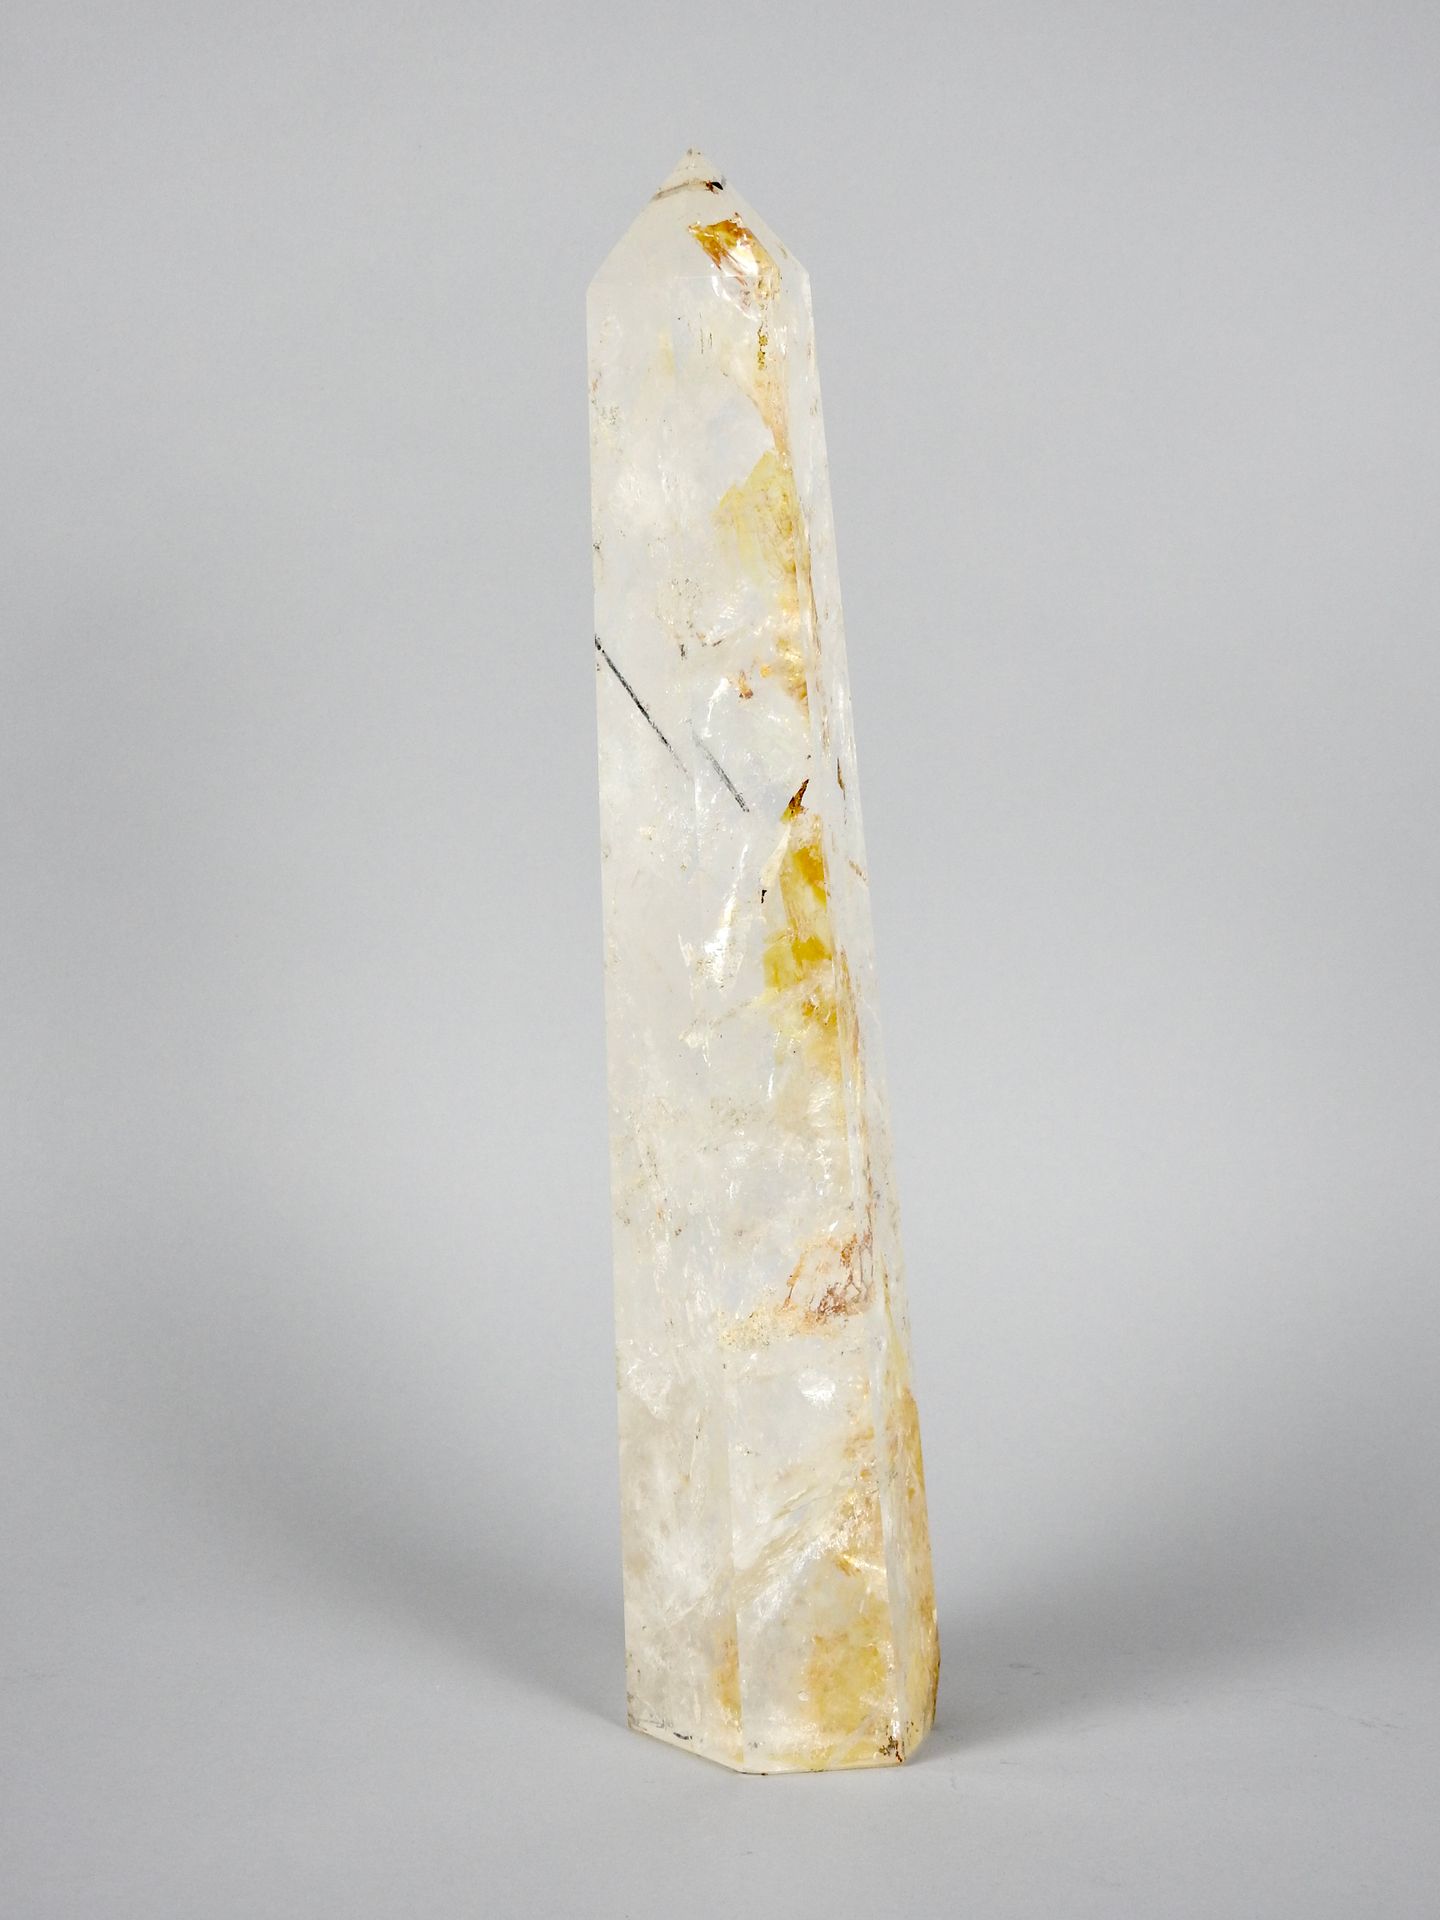 Null 抛光和刻面的单晶石 岩石晶体石英

高36厘米